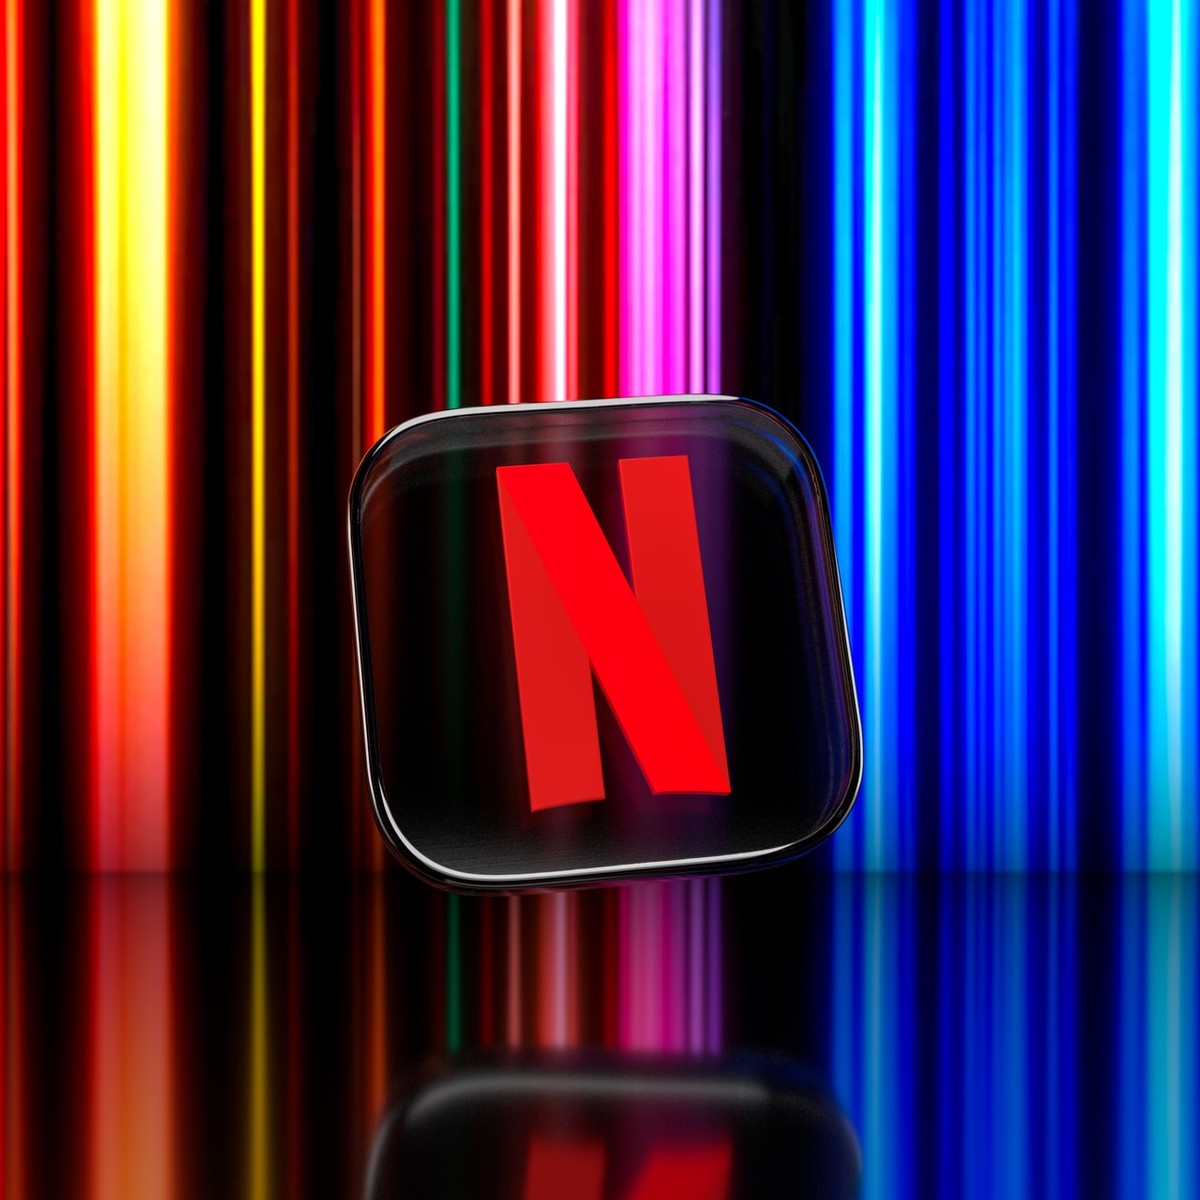 Netflix de graça: como testar o serviço por um mês sem pagar nada